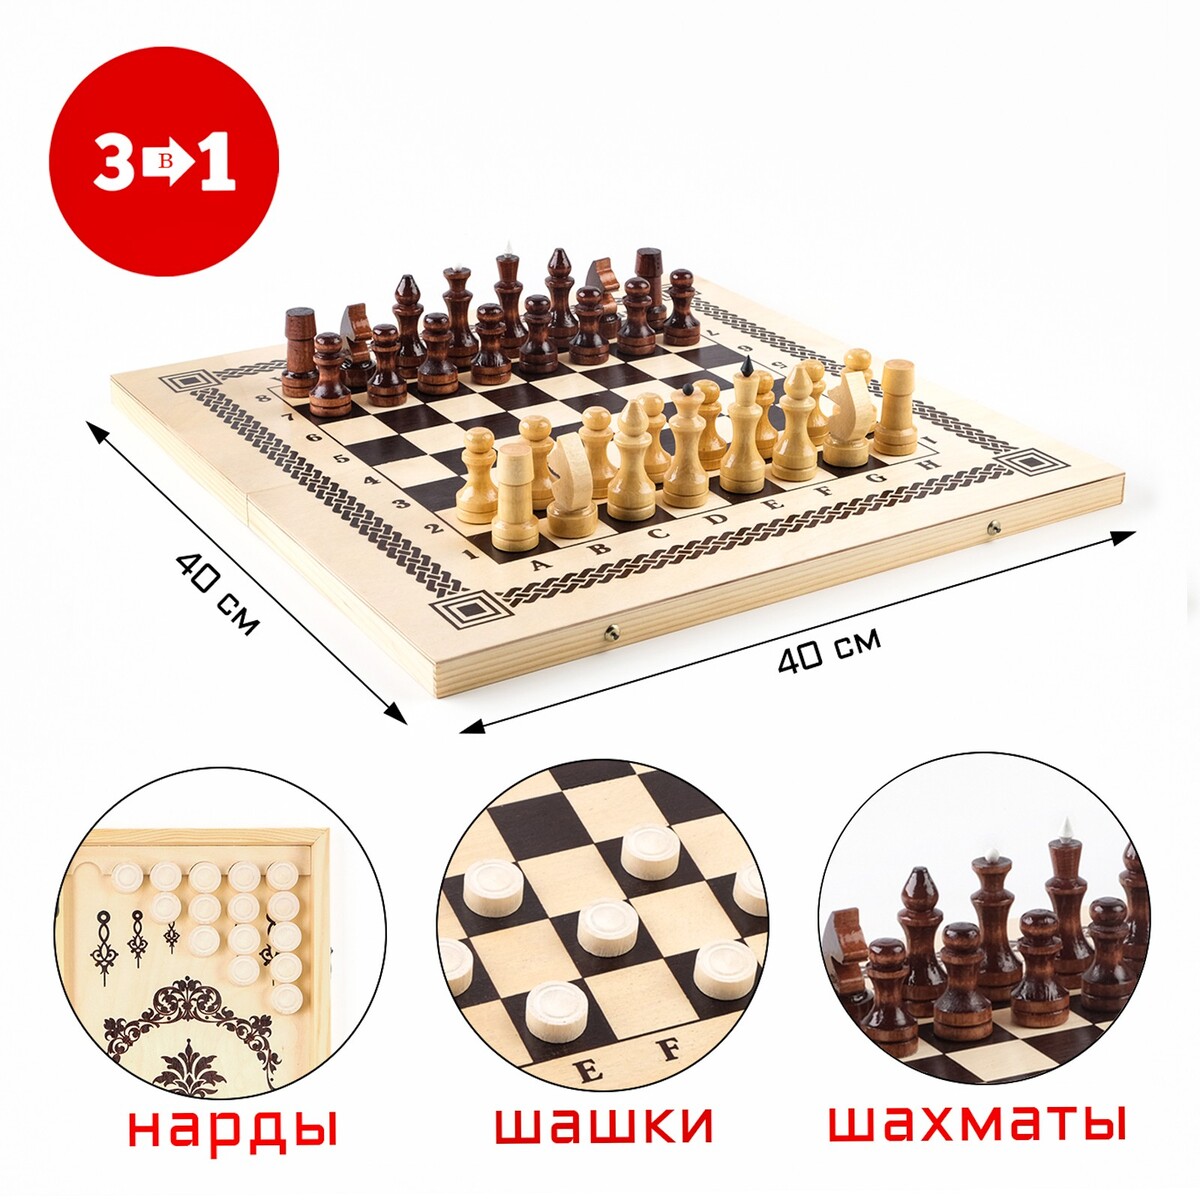 Настольная игра 3 в 1: нарды, шашки, шахматы, 40 х 40 см настольная игра десятое королевство шашки шахматы нарды 01451